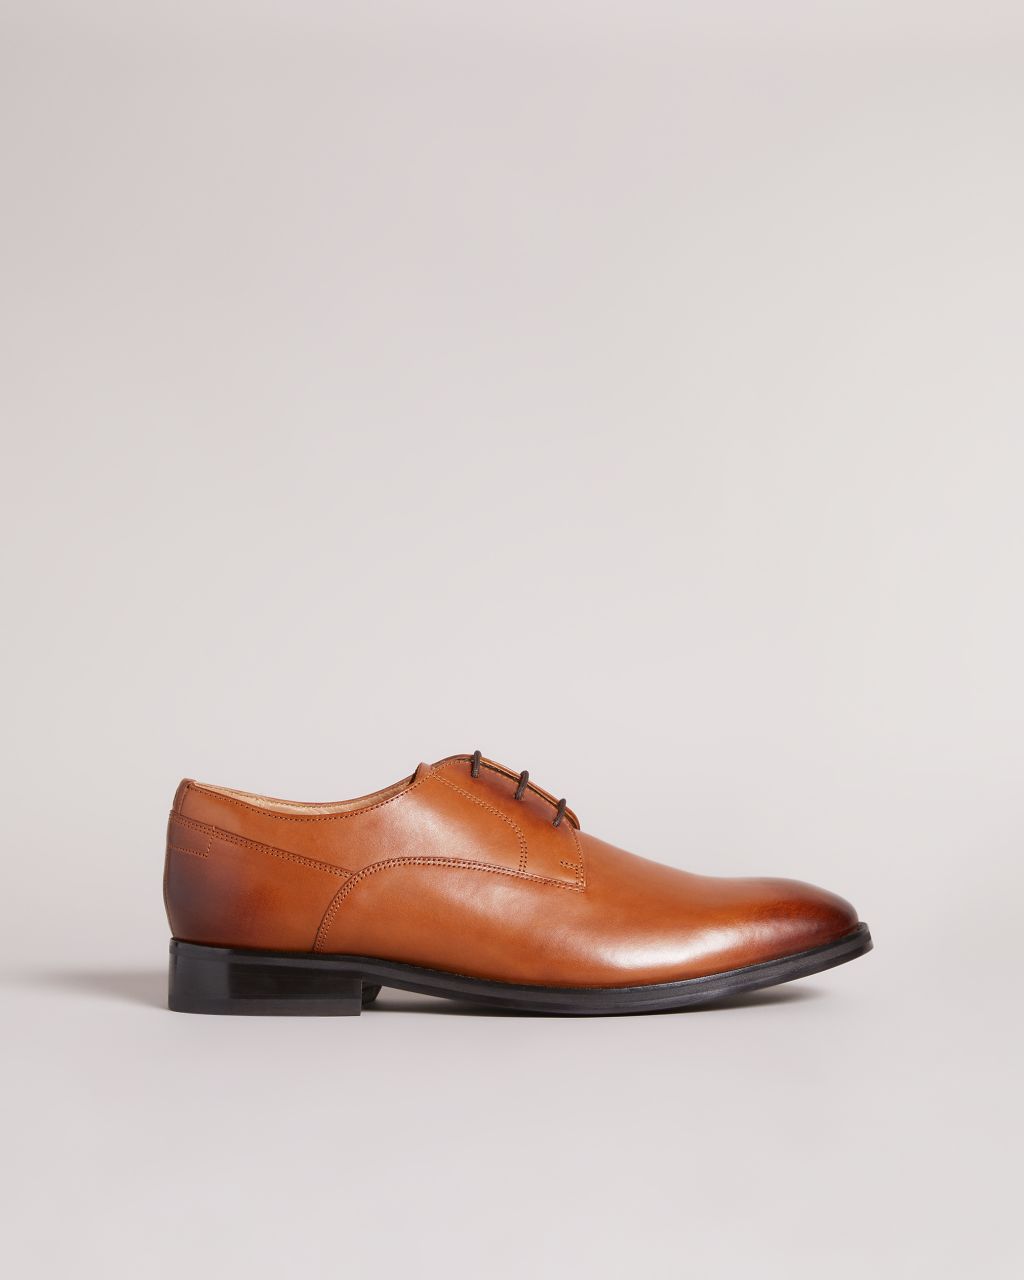 Ted Baker Men's Formal Leather Derby Shoes in Tan, Kampten